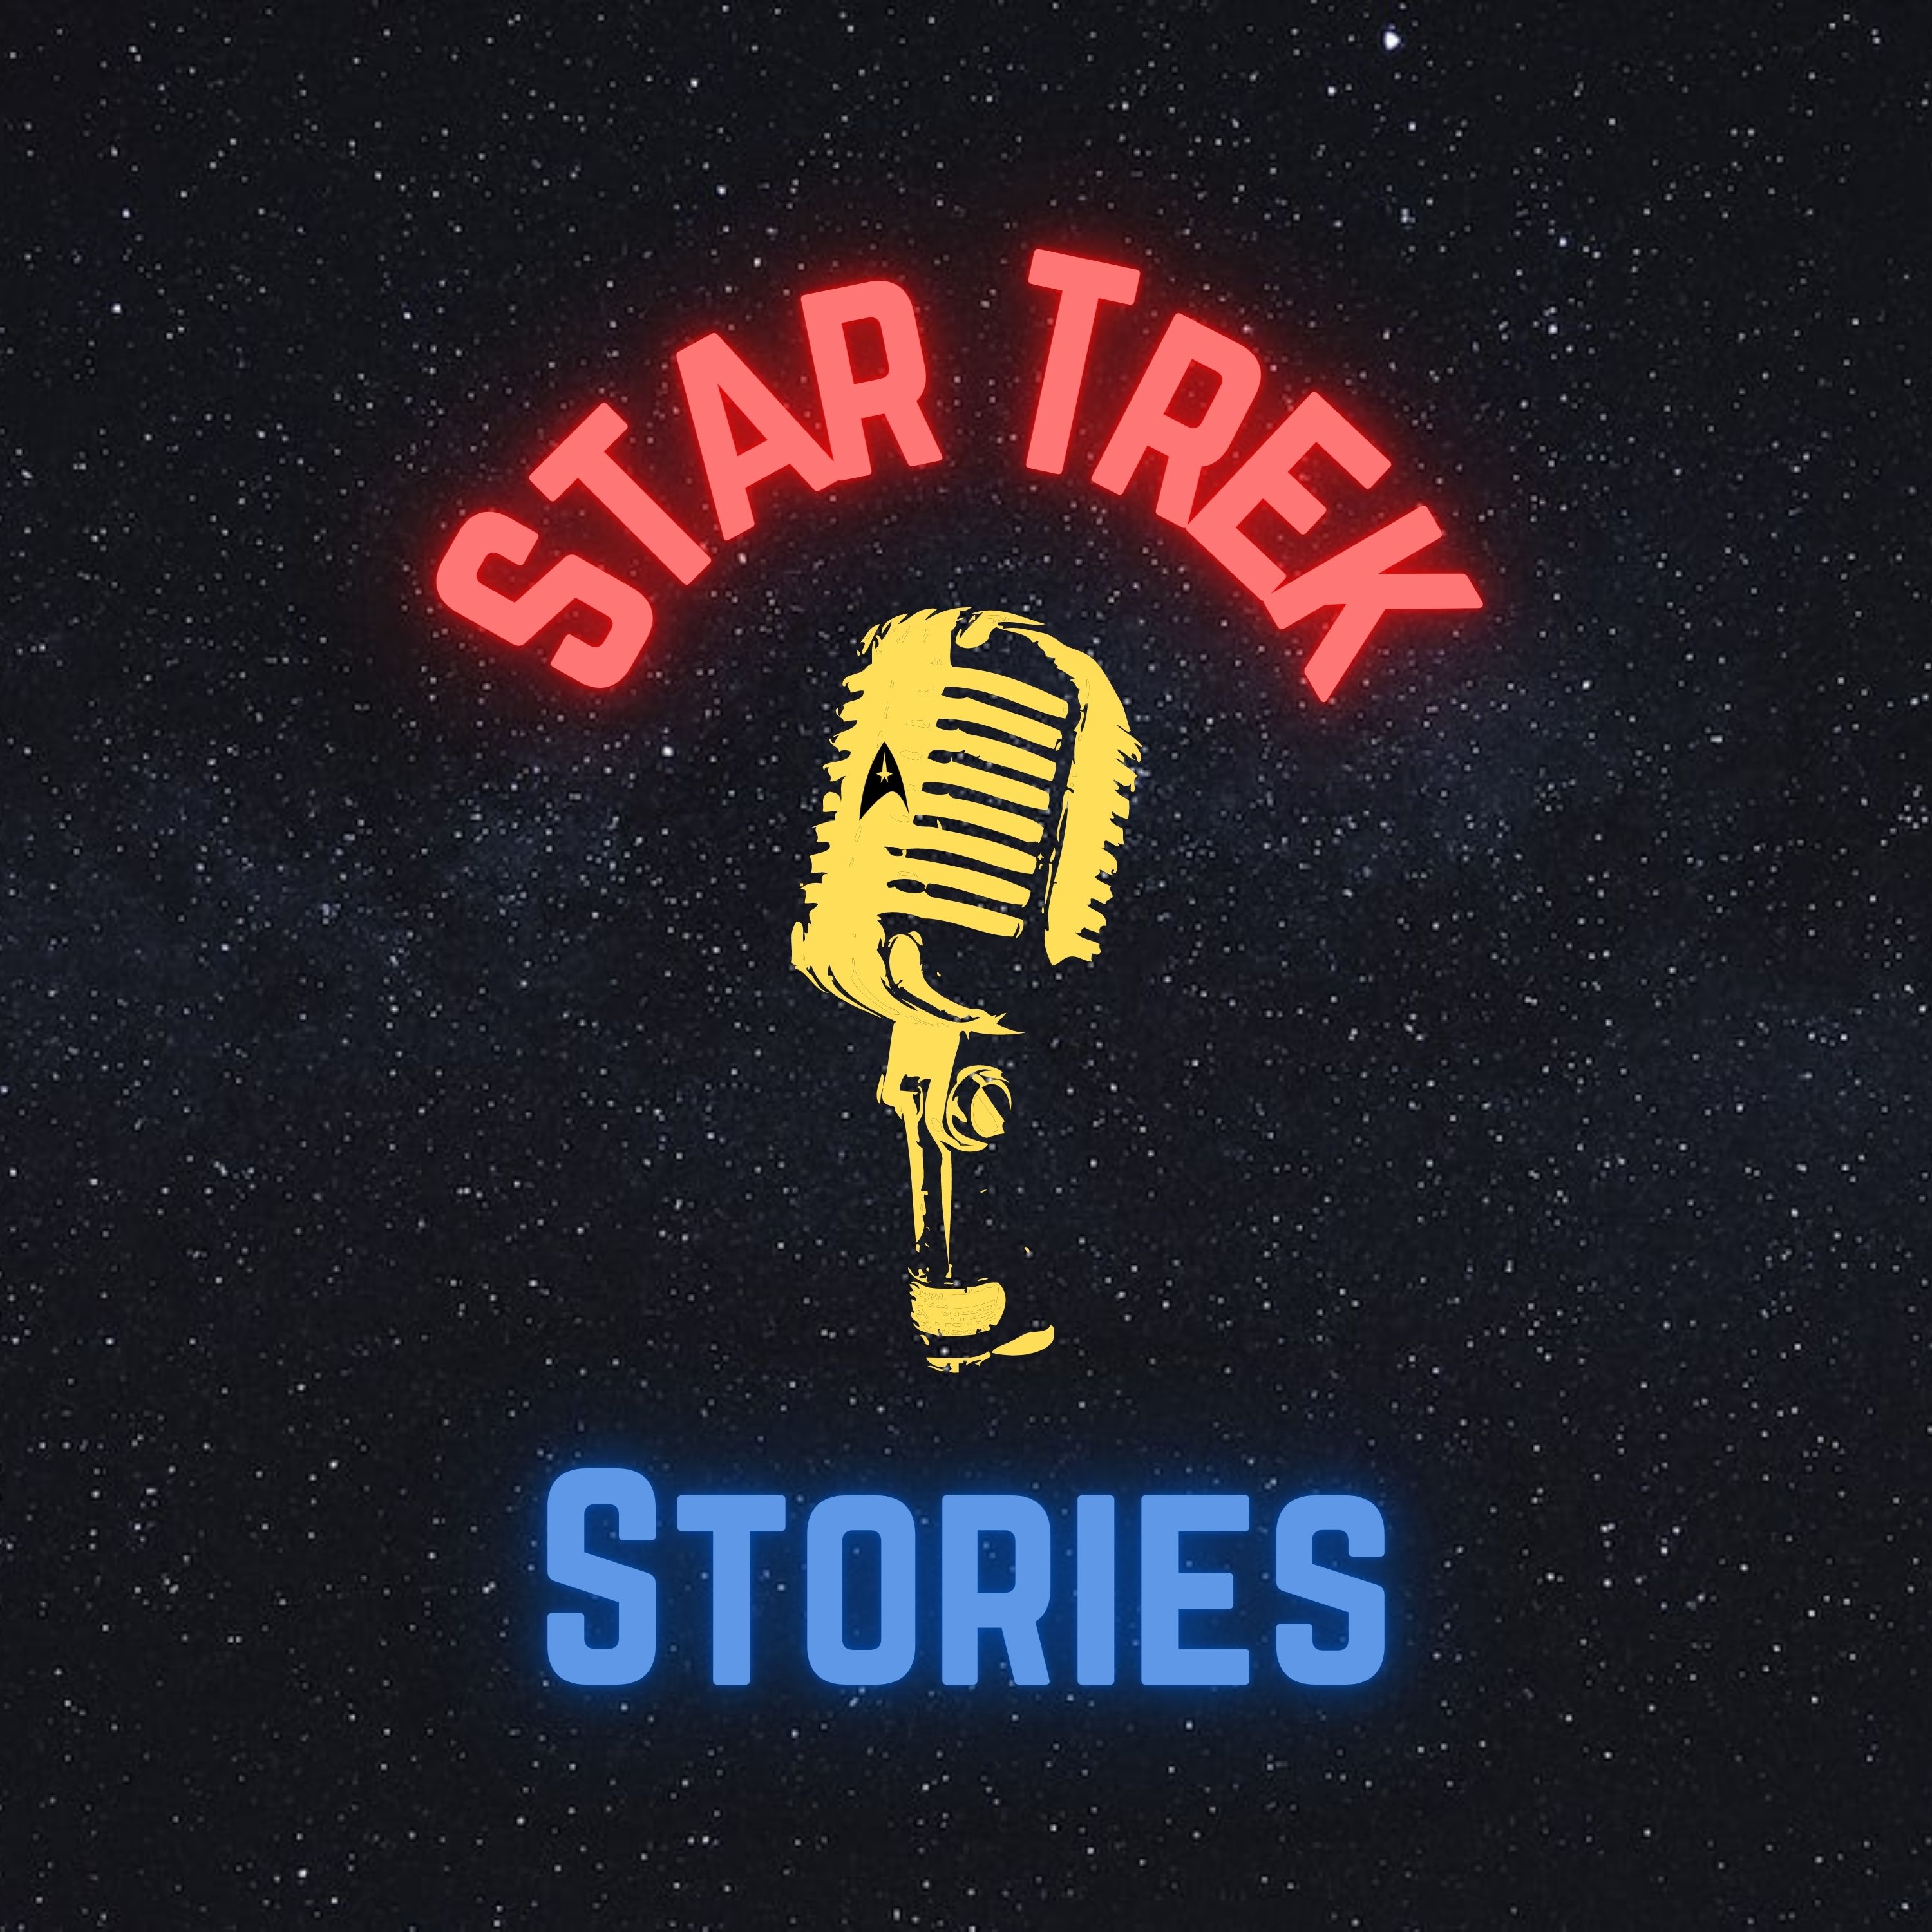 Show artwork for Star Trek Stories